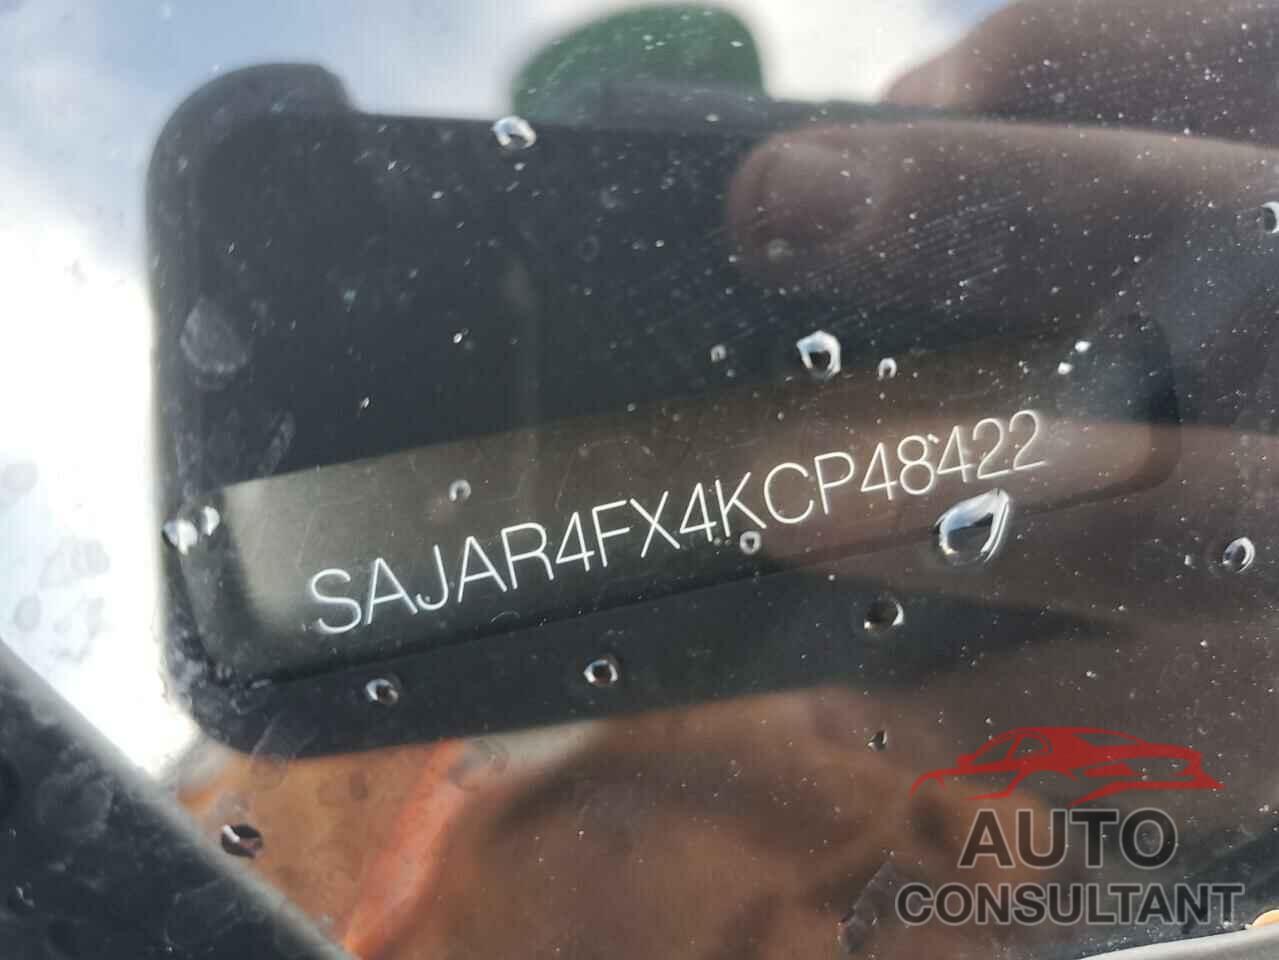 JAGUAR XE 2019 - SAJAR4FX4KCP48422